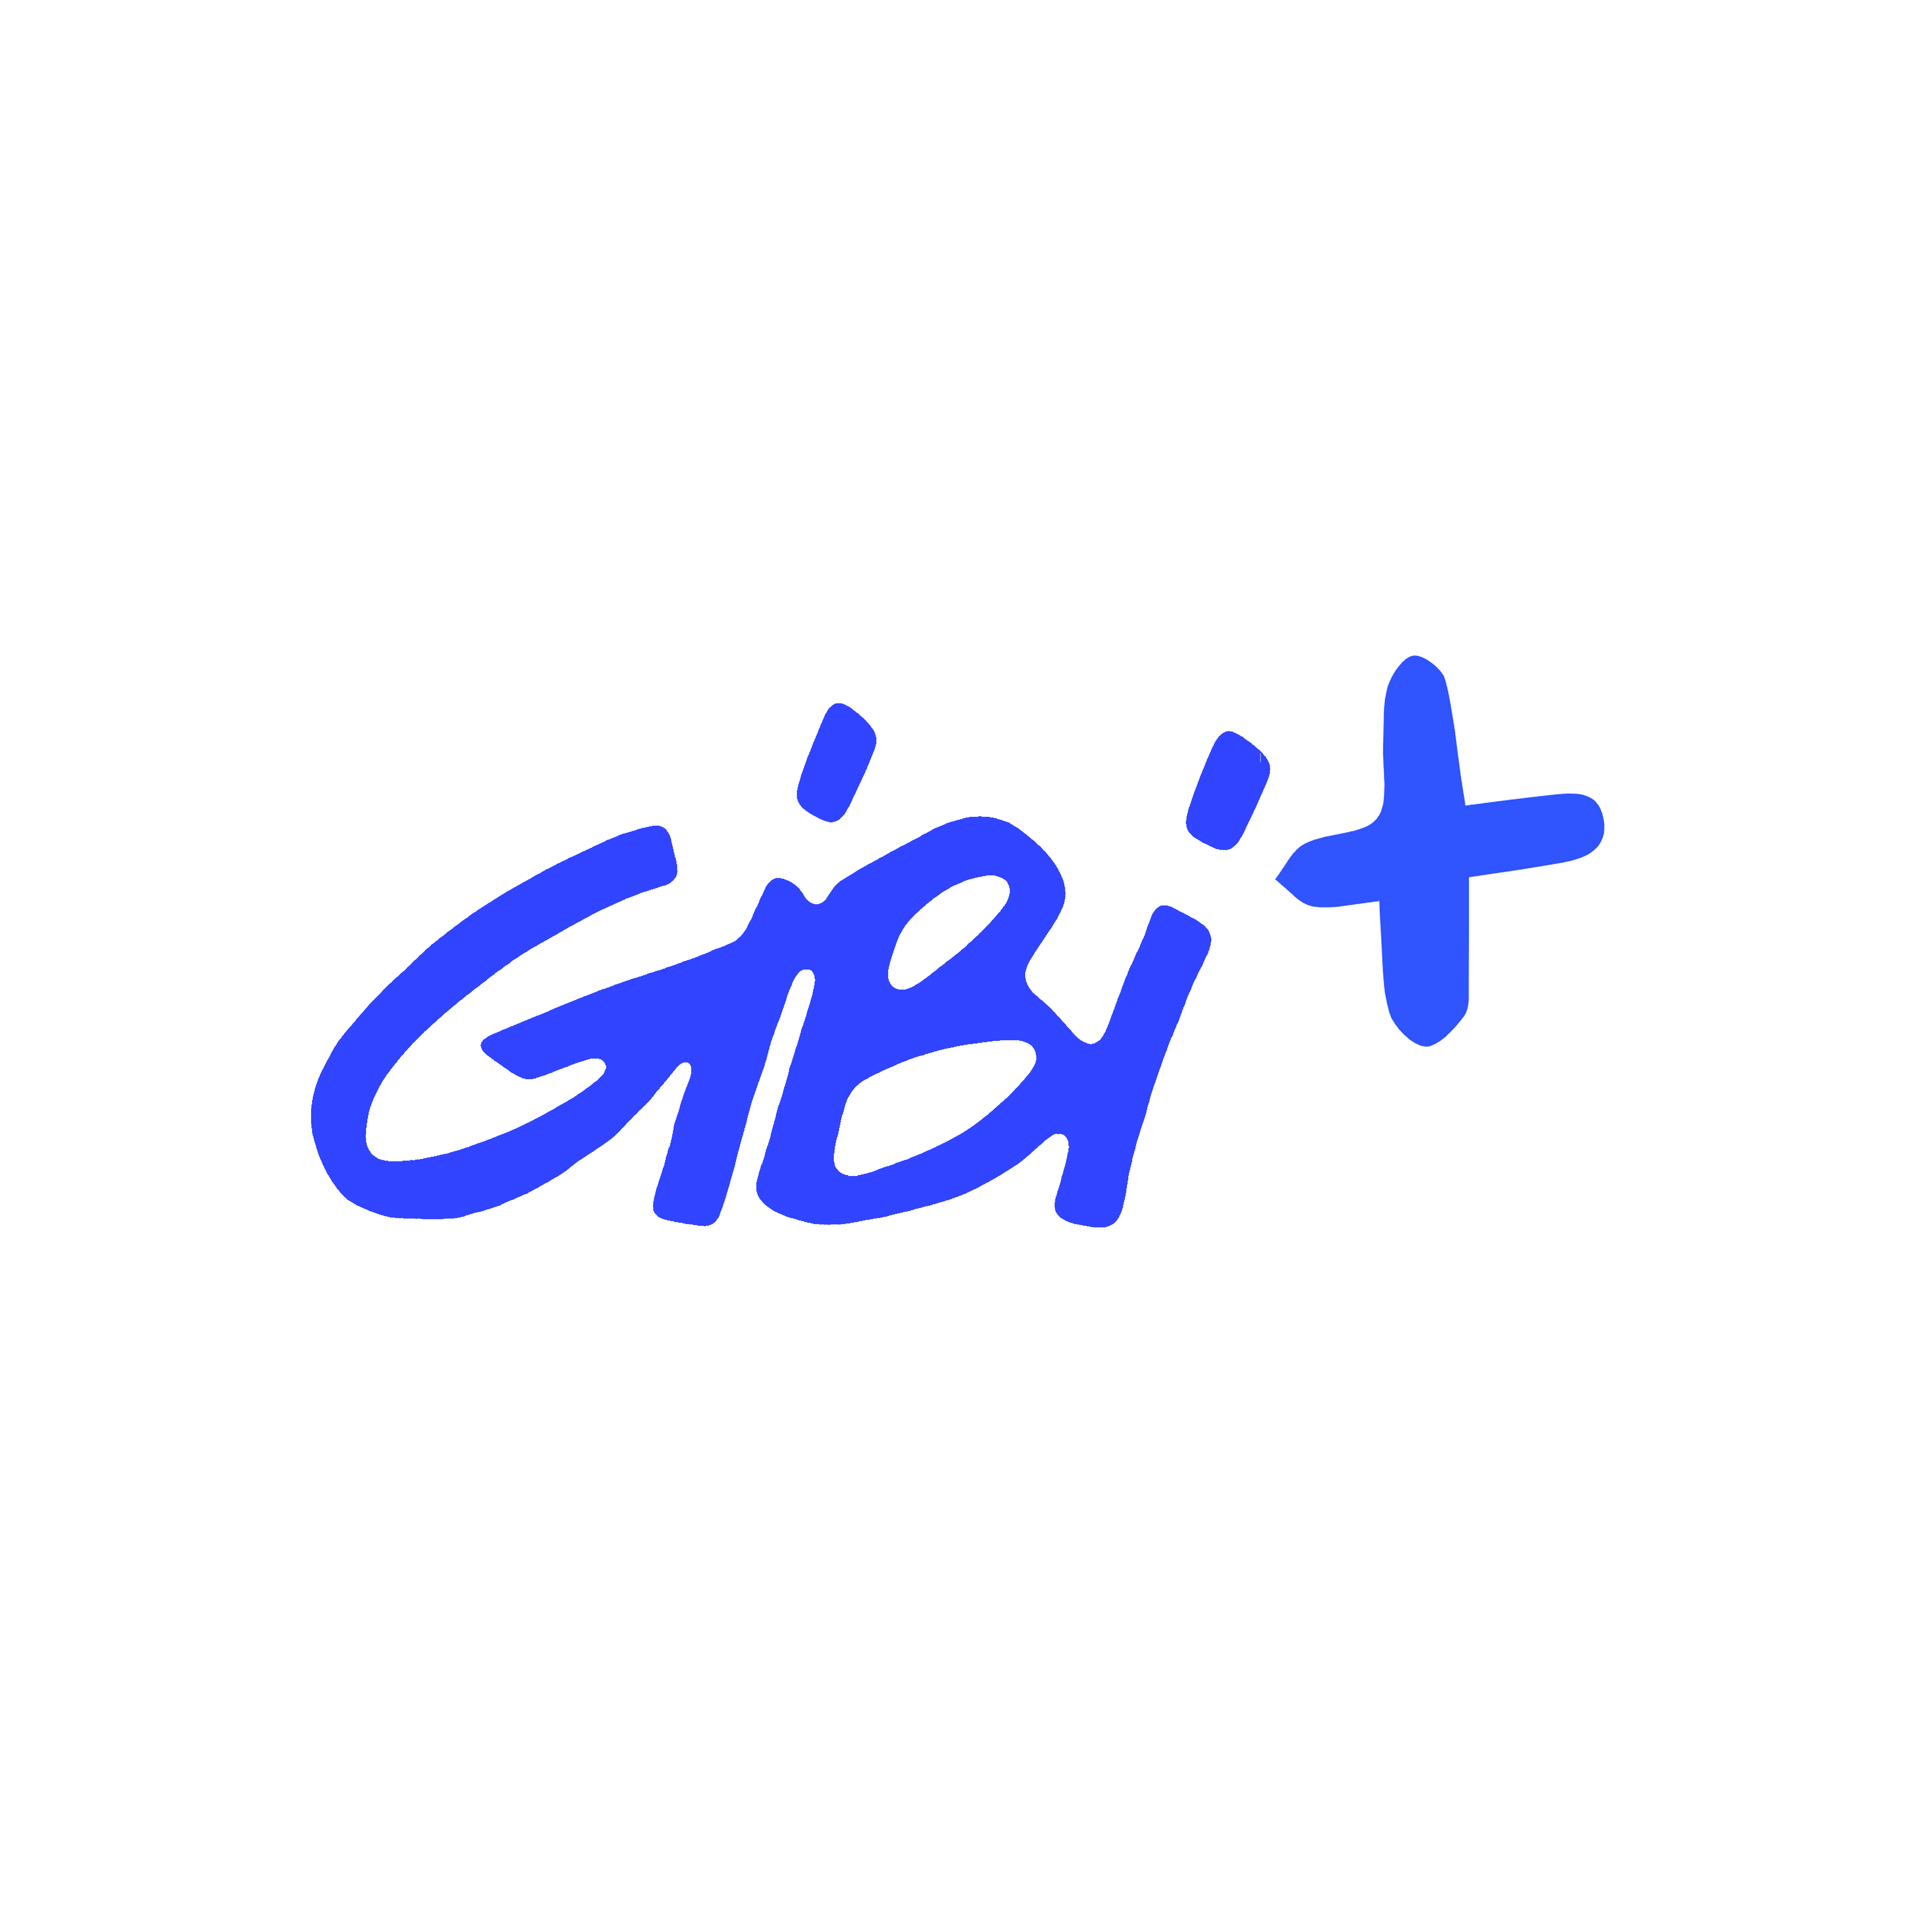 GiBi